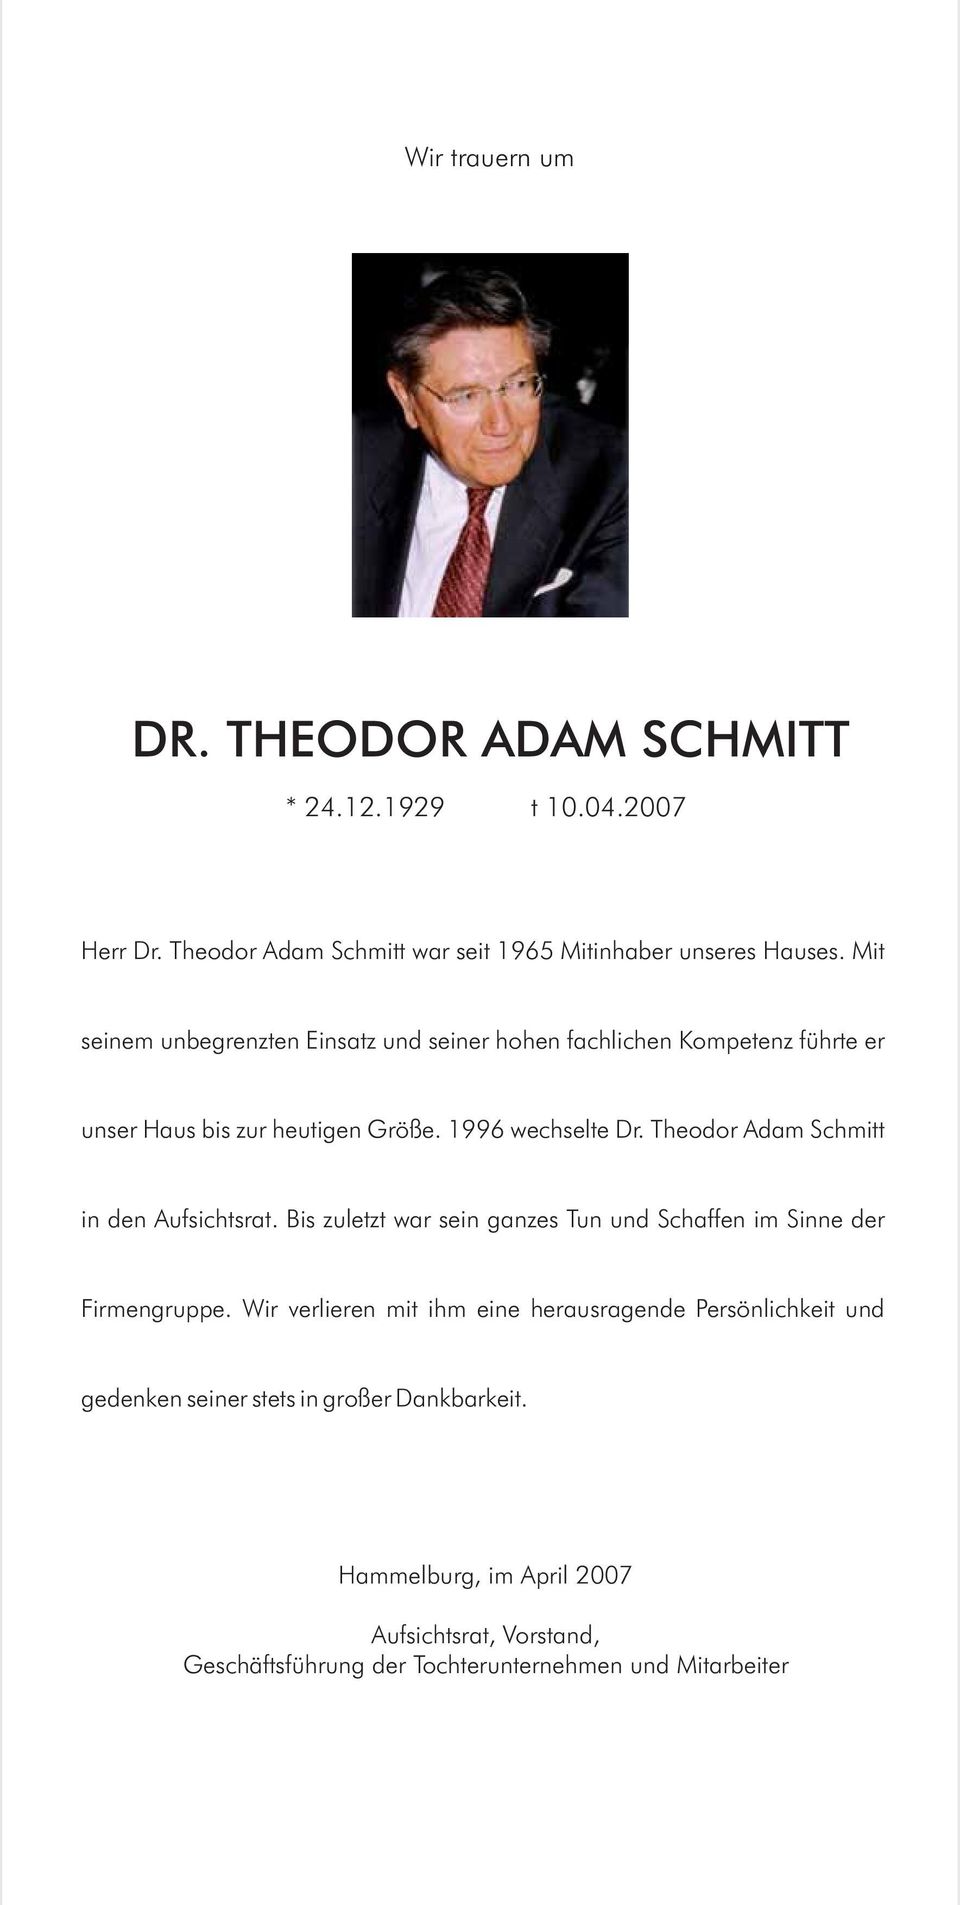 Theodor Adam Schmitt in den Aufsichtsrat. Bis zuletzt war sein ganzes Tun und Schaffen im Sinne der Firmengruppe.